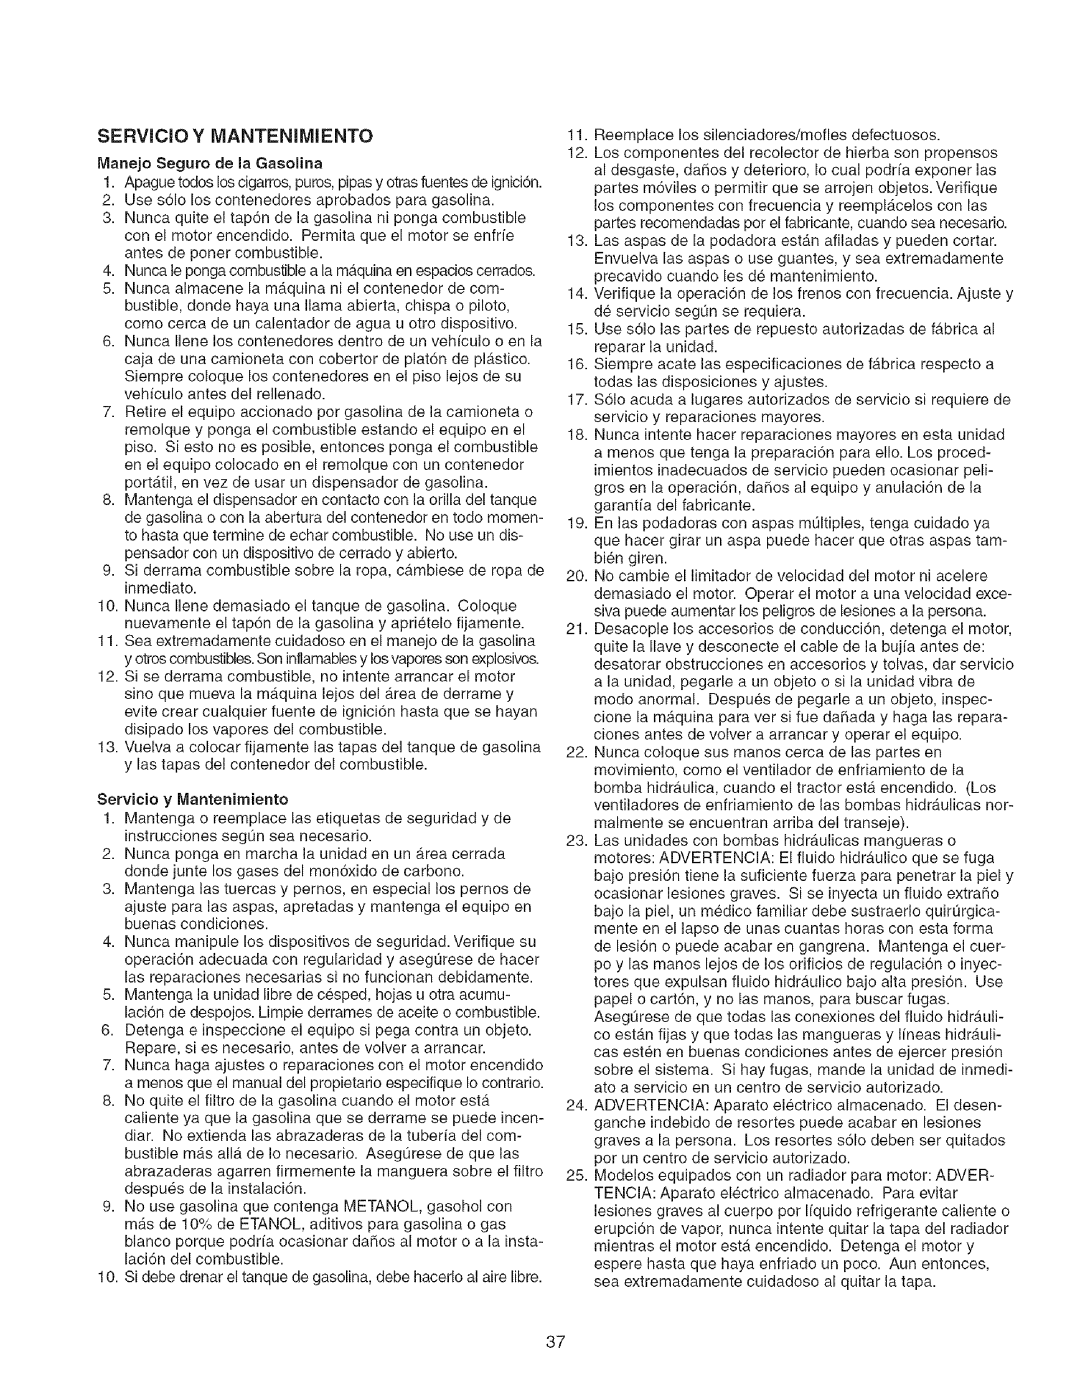 Craftsman 107.2777 manual SERVCO Y MANTENilVIENTO, Servicio y Mantenimiento 